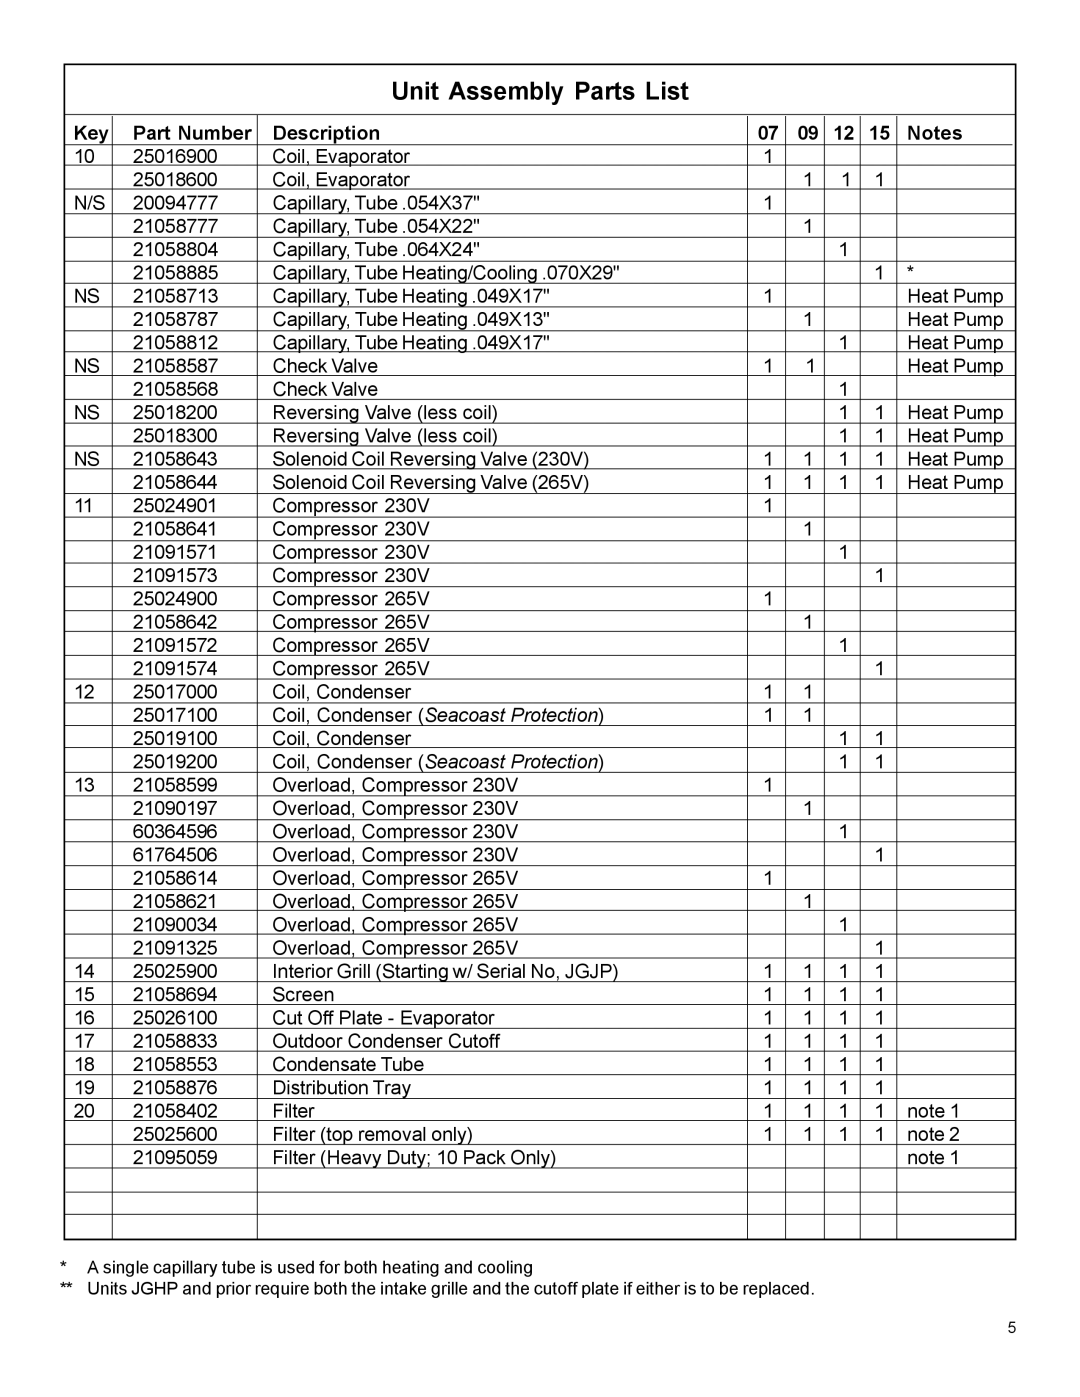 Friedrich WMPTAC02 manual Unit Assembly Parts List, Part Number, Description, Coil, Condenser Seacoast Protection 